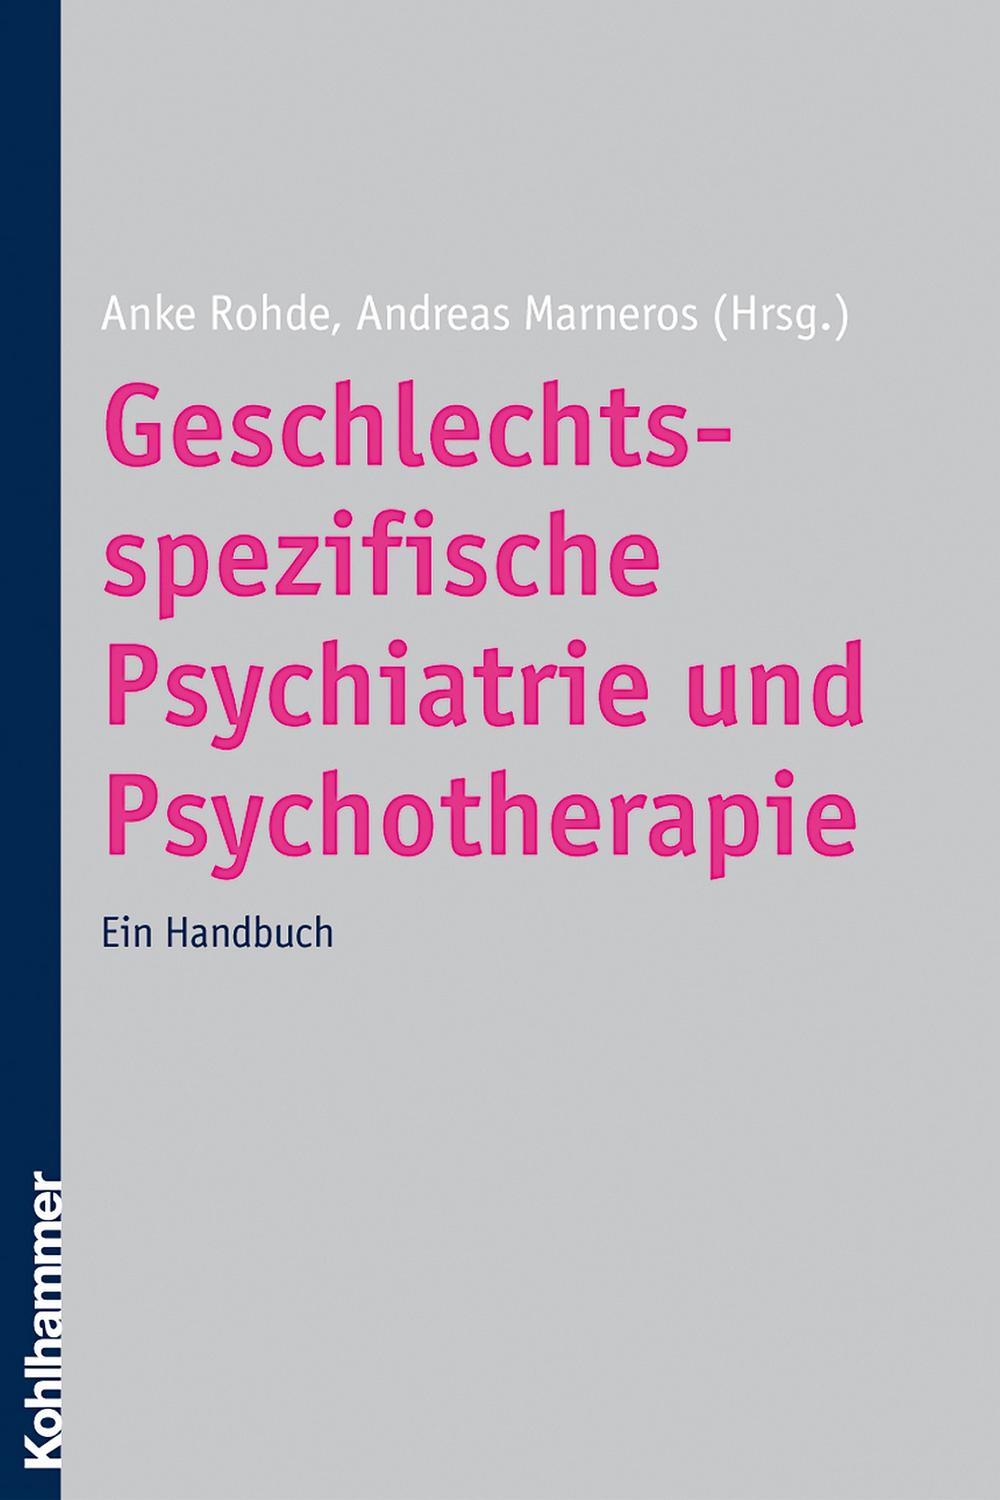 Geschlechtsspezifische Psychiatrie und Psychotherapie - Anke Rohde, Andreas Marneros